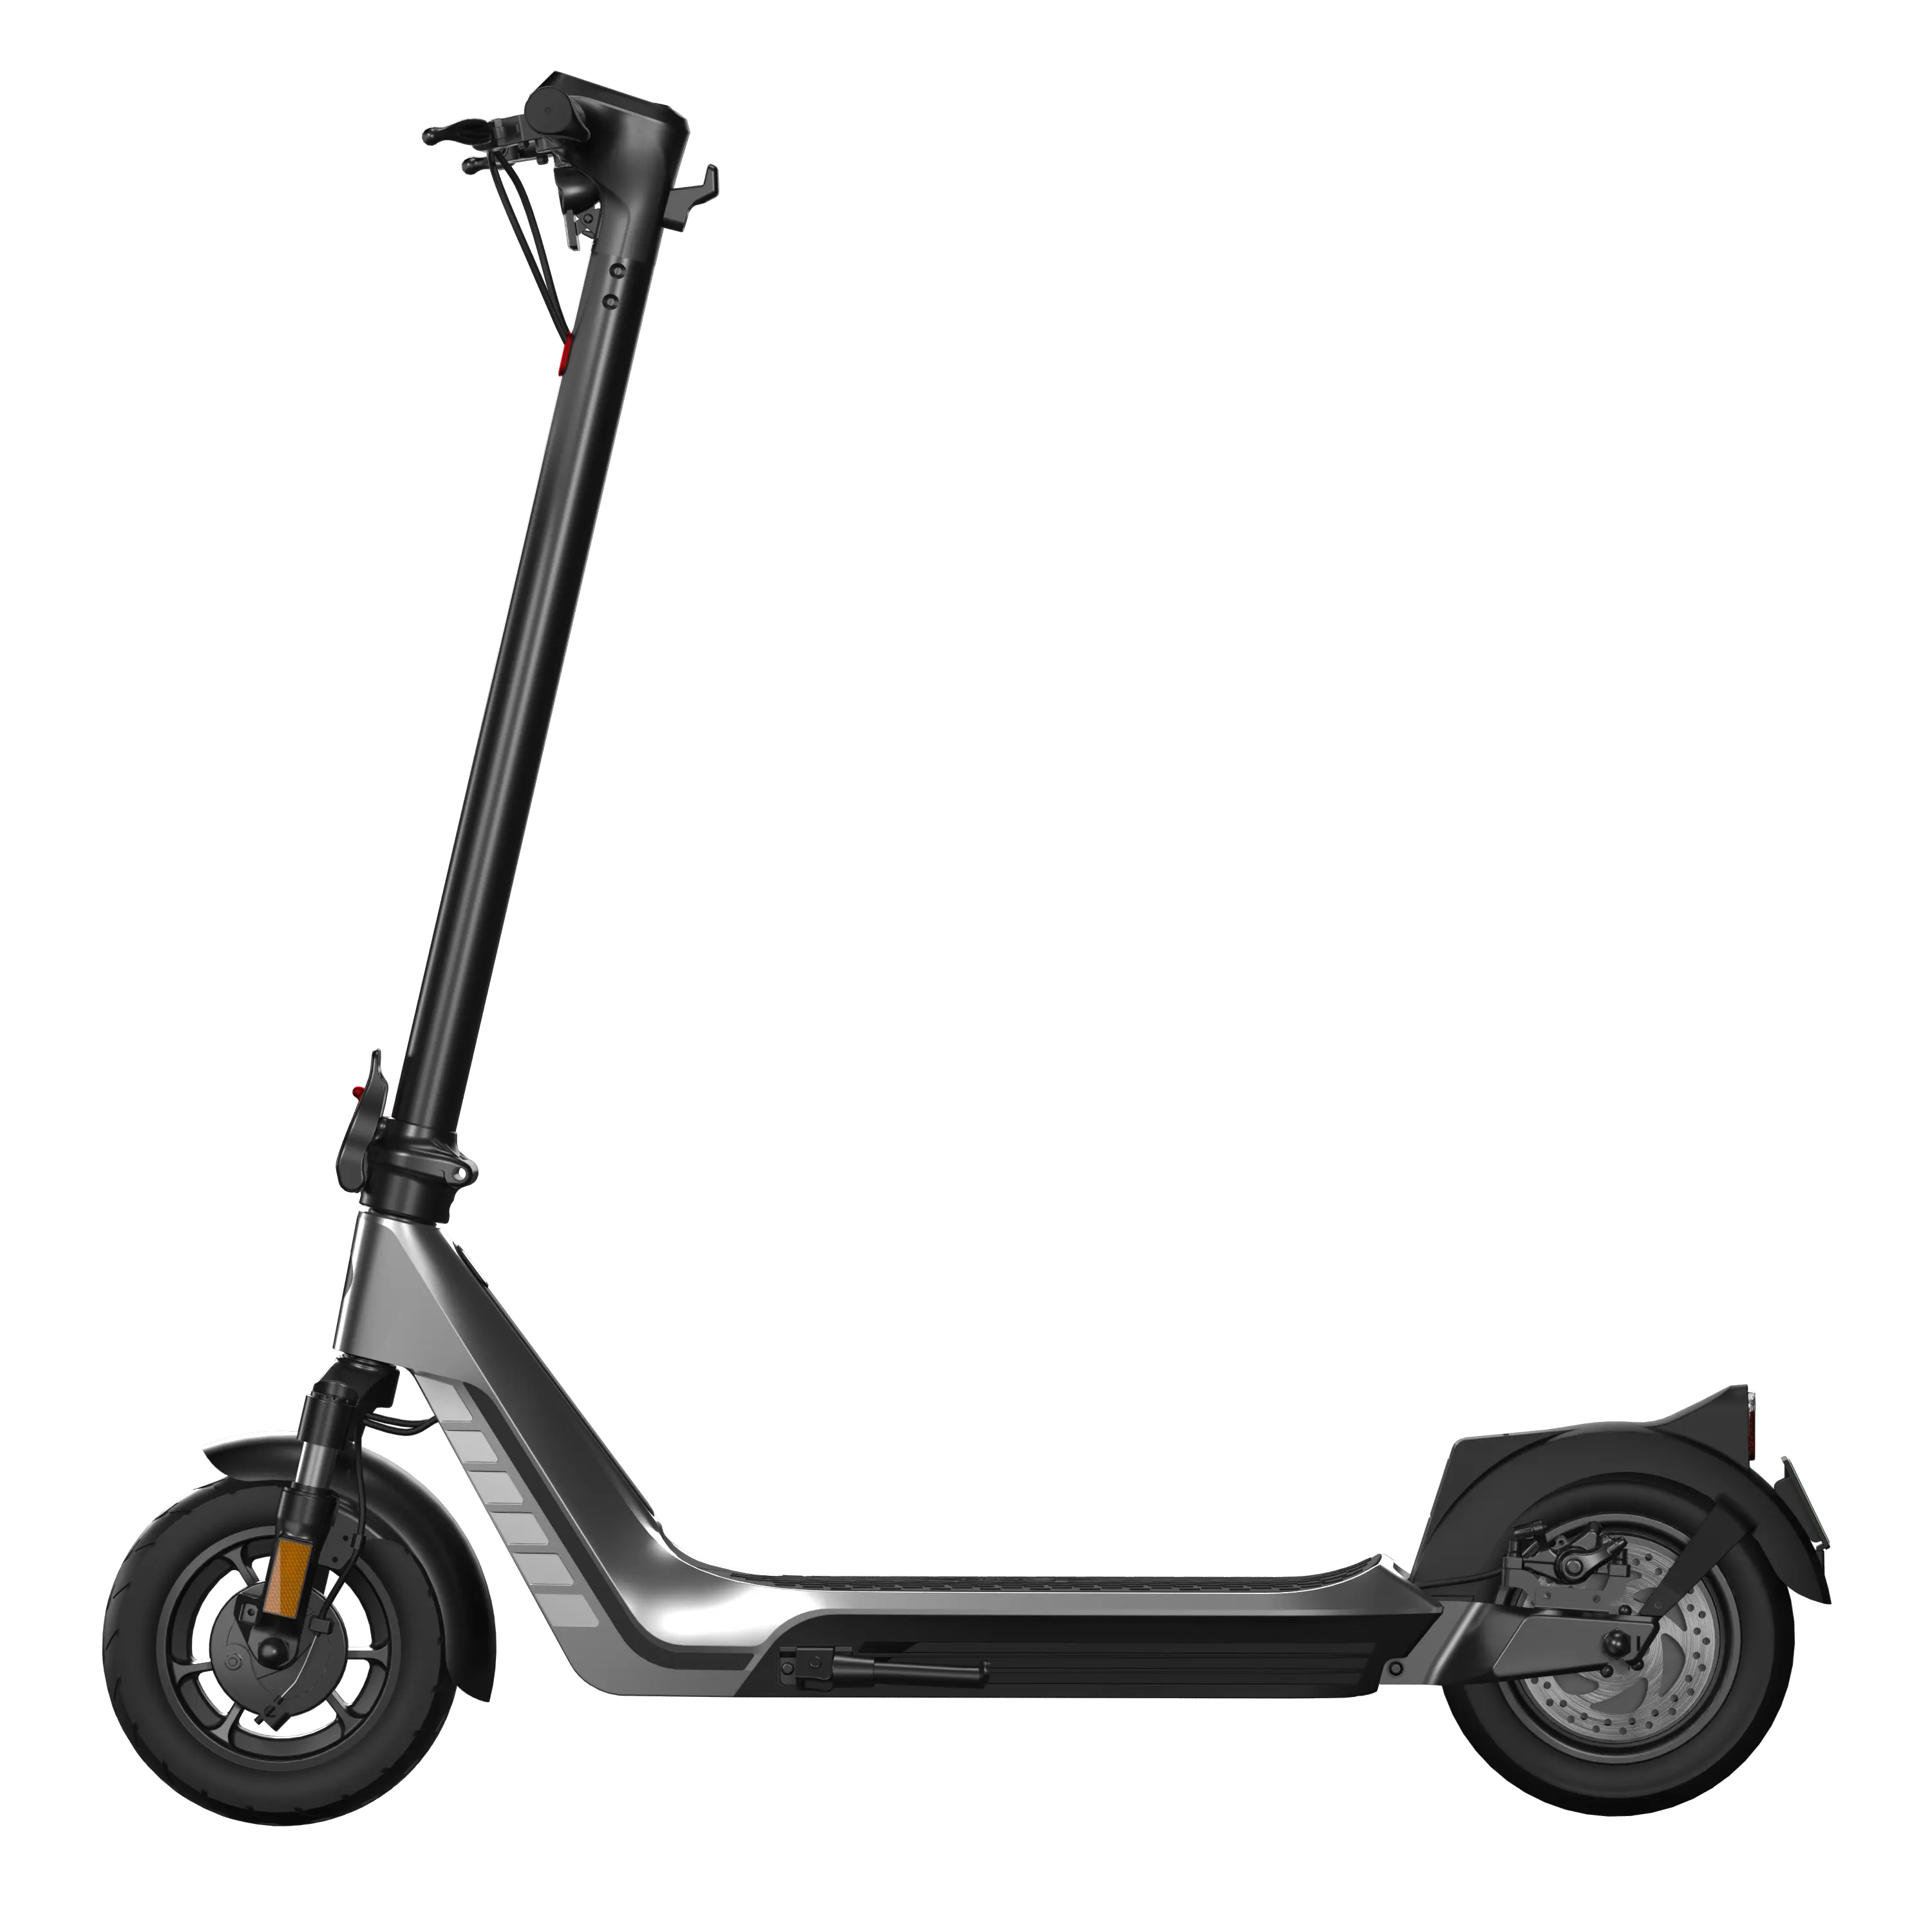 De China al por mayor directa de la fábrica eléctrica Scooter bicicleta 10 pulgadas neumáticos deporte de la movilidad eléctrica Scooters eléctrica E-Scuter